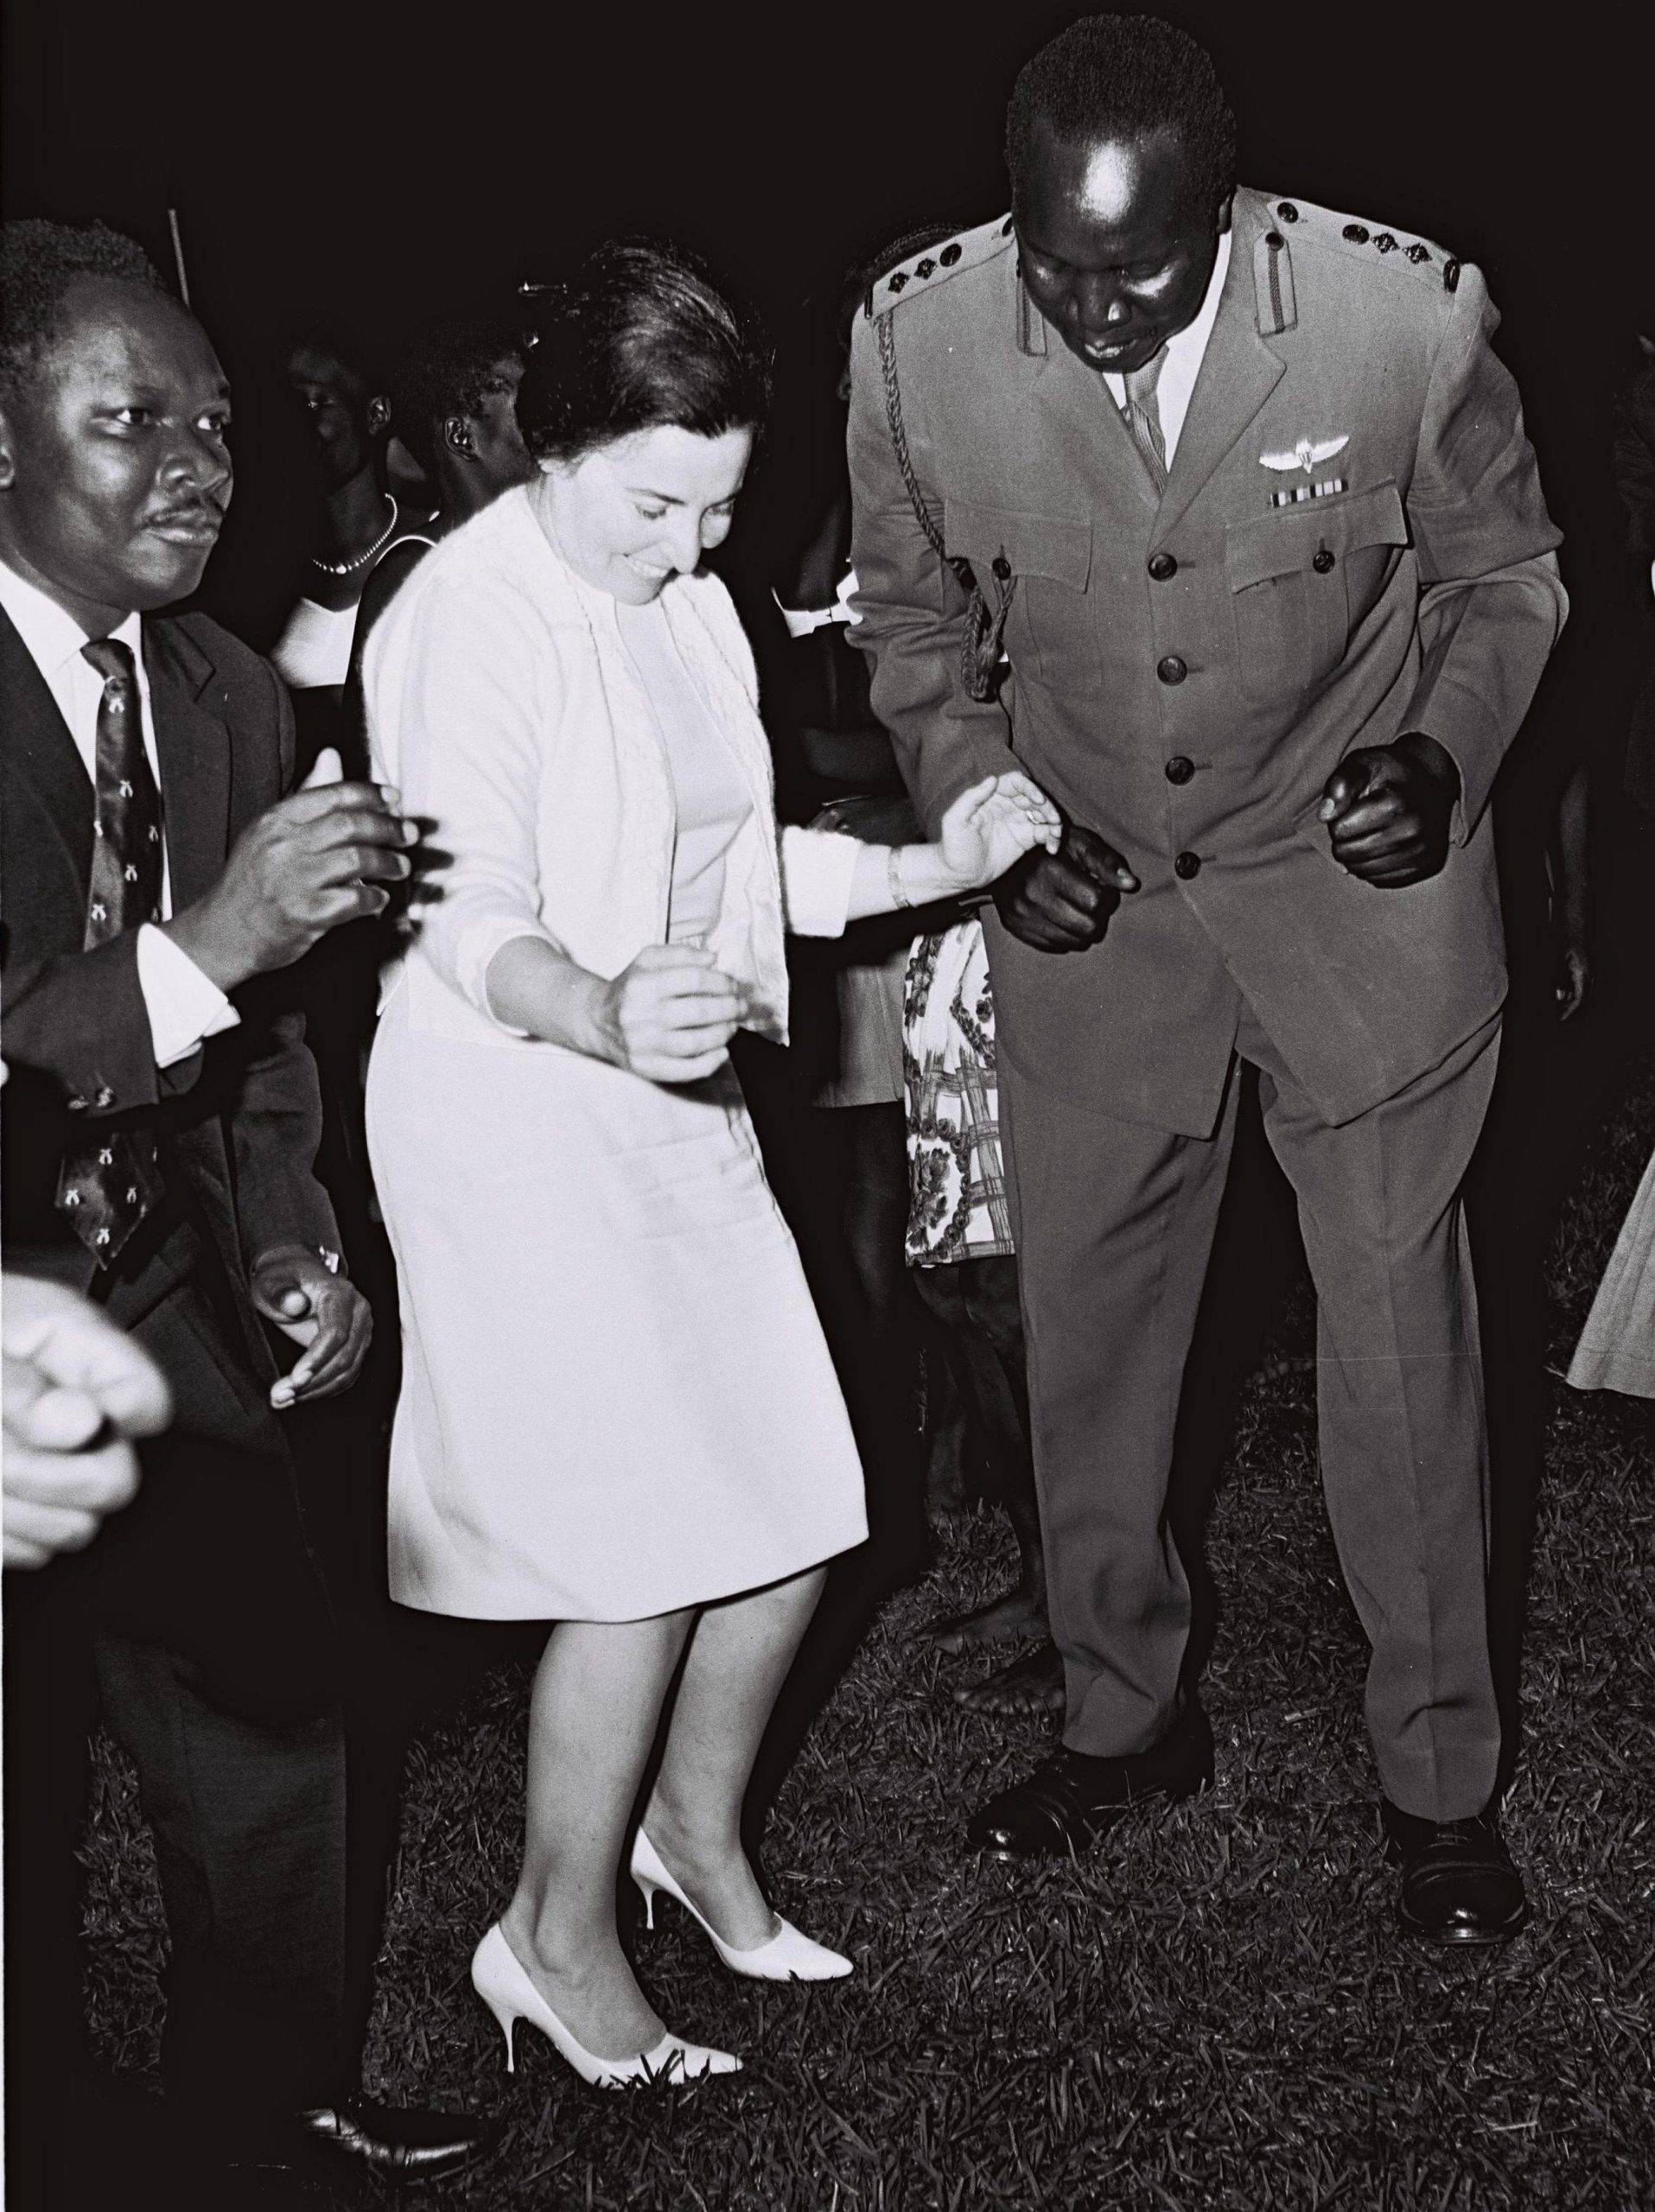 11 de abril de 1979 Idi Amin Dada caía del poder en Uganda, uno de los dictadores más sanguinarios de África